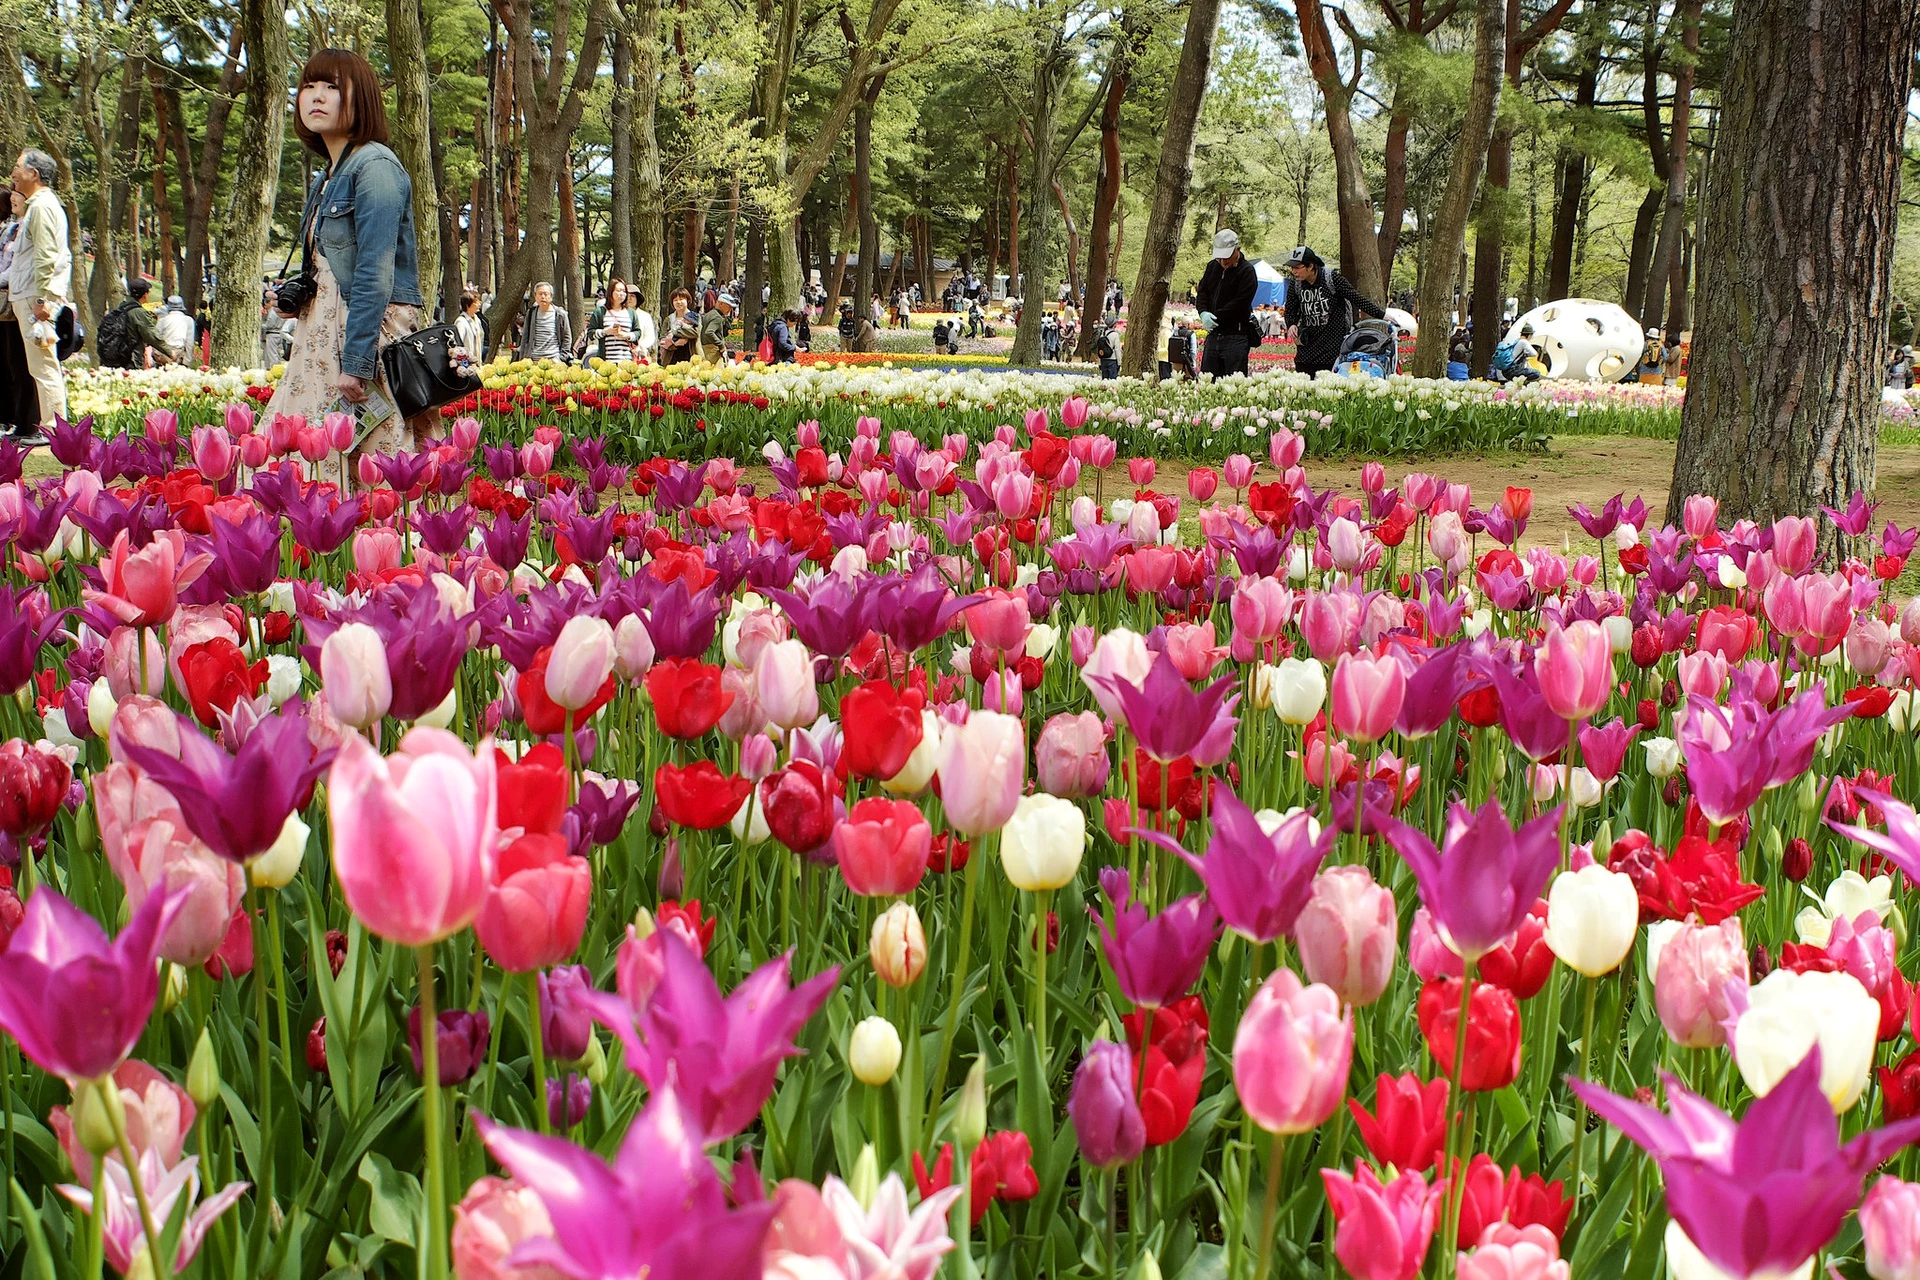 Hoa tulip là một trong những loài hoa mùa đông của công viên Hitachi. Tại đây, người ta trồng 170 loài hoa tulip khác nhau. Ảnh: Ishikawa kazuo.